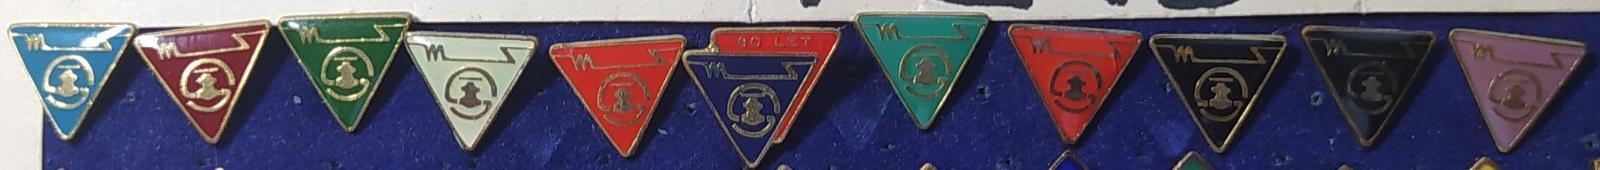 P213 Odznak MS - Modřanské strojírny Modřany - 11ks